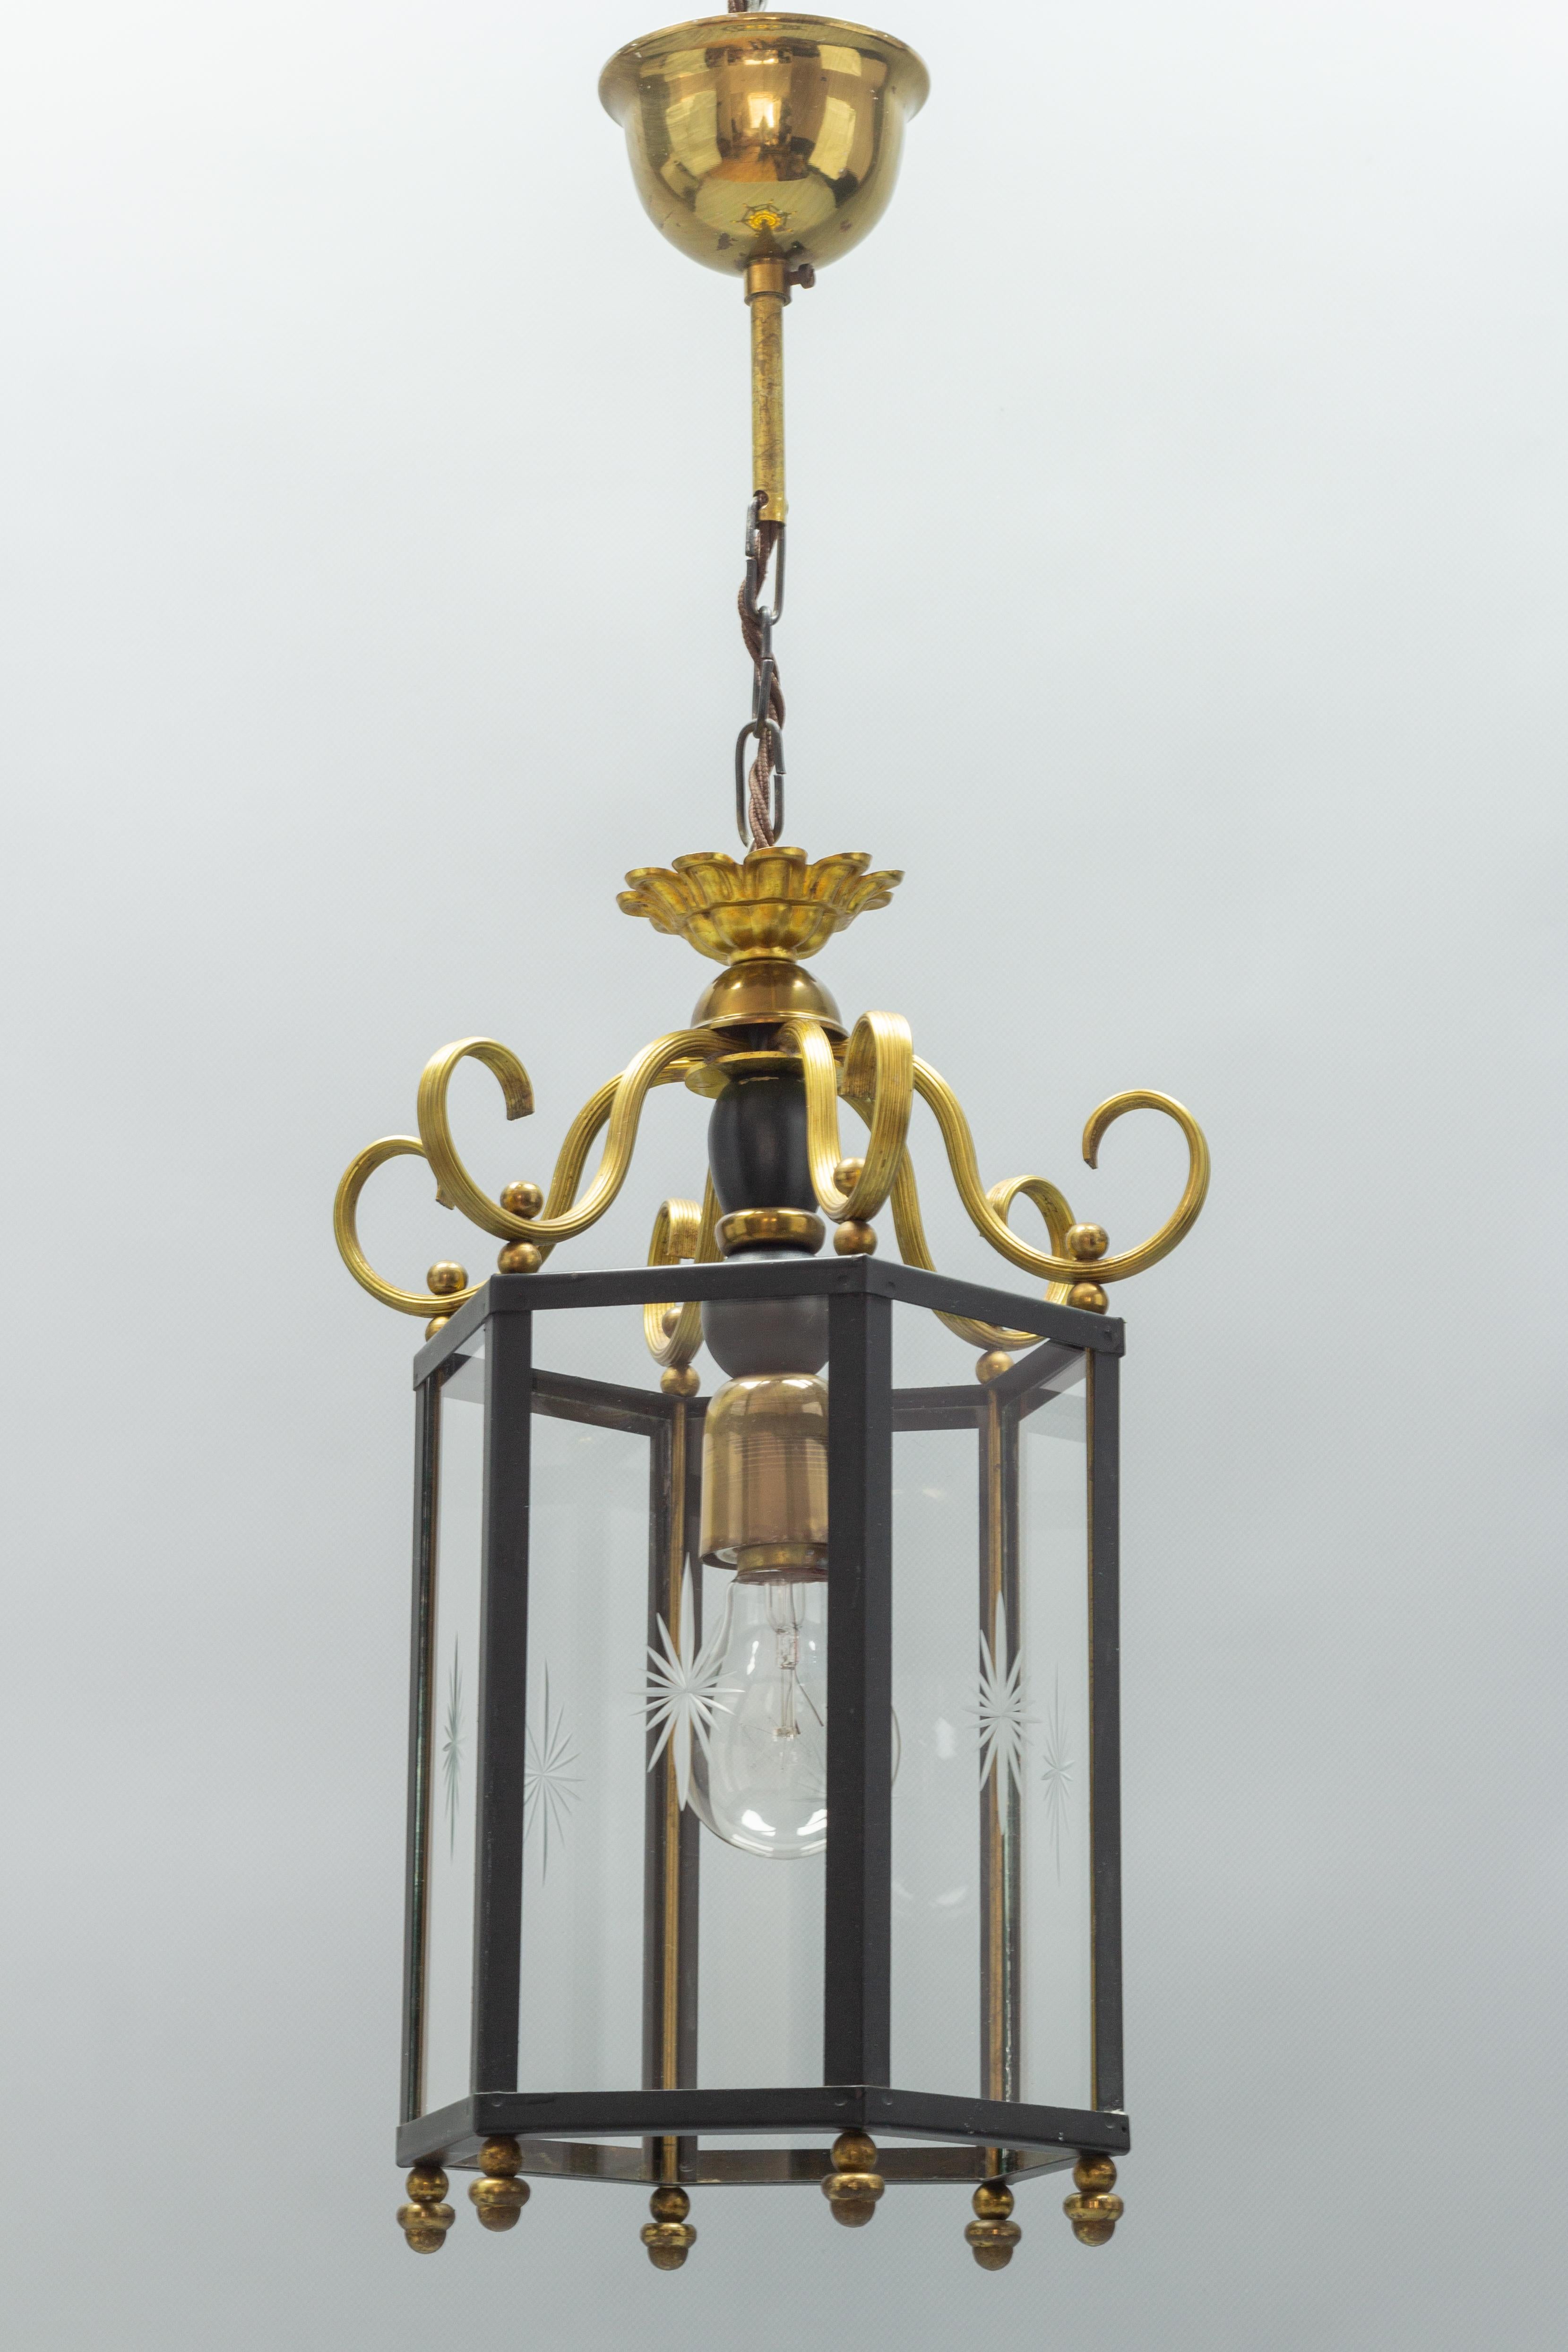 Belle lanterne d'intérieur suspendue de style néoclassique du milieu du 20e siècle avec six panneaux de verre. Chacun des six panneaux de verre présente un décor d'étoiles découpées.
Une douille pour une ampoule de taille E27 (E26).
Dimensions :